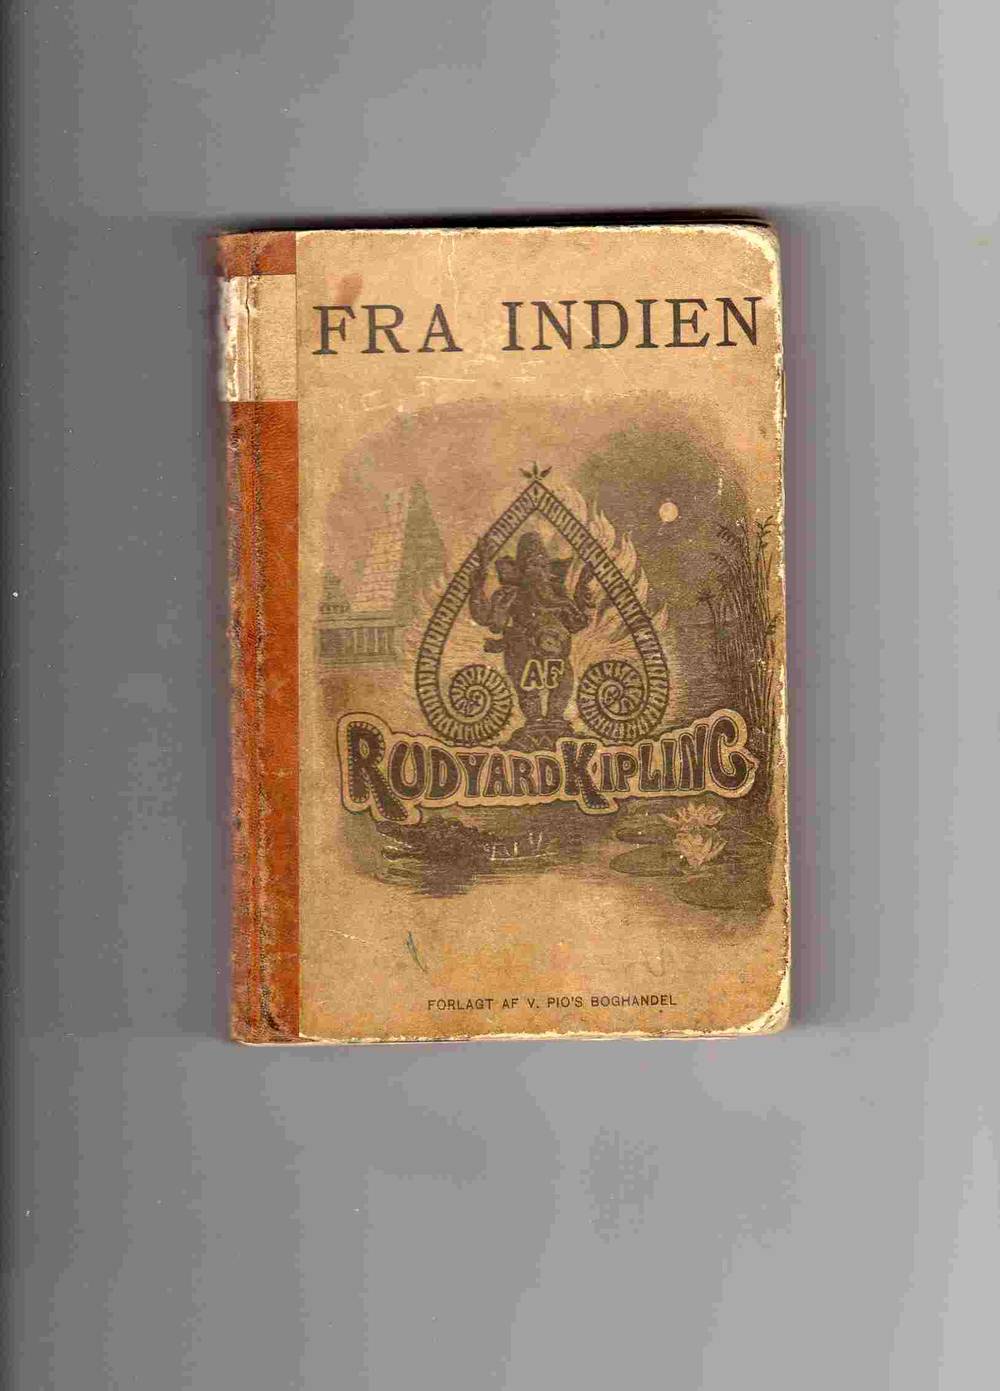 Fra Indien af Rudyard Kipling Fortællinger Pios oversatt Alfred Ipsen Kbh 1892 navn